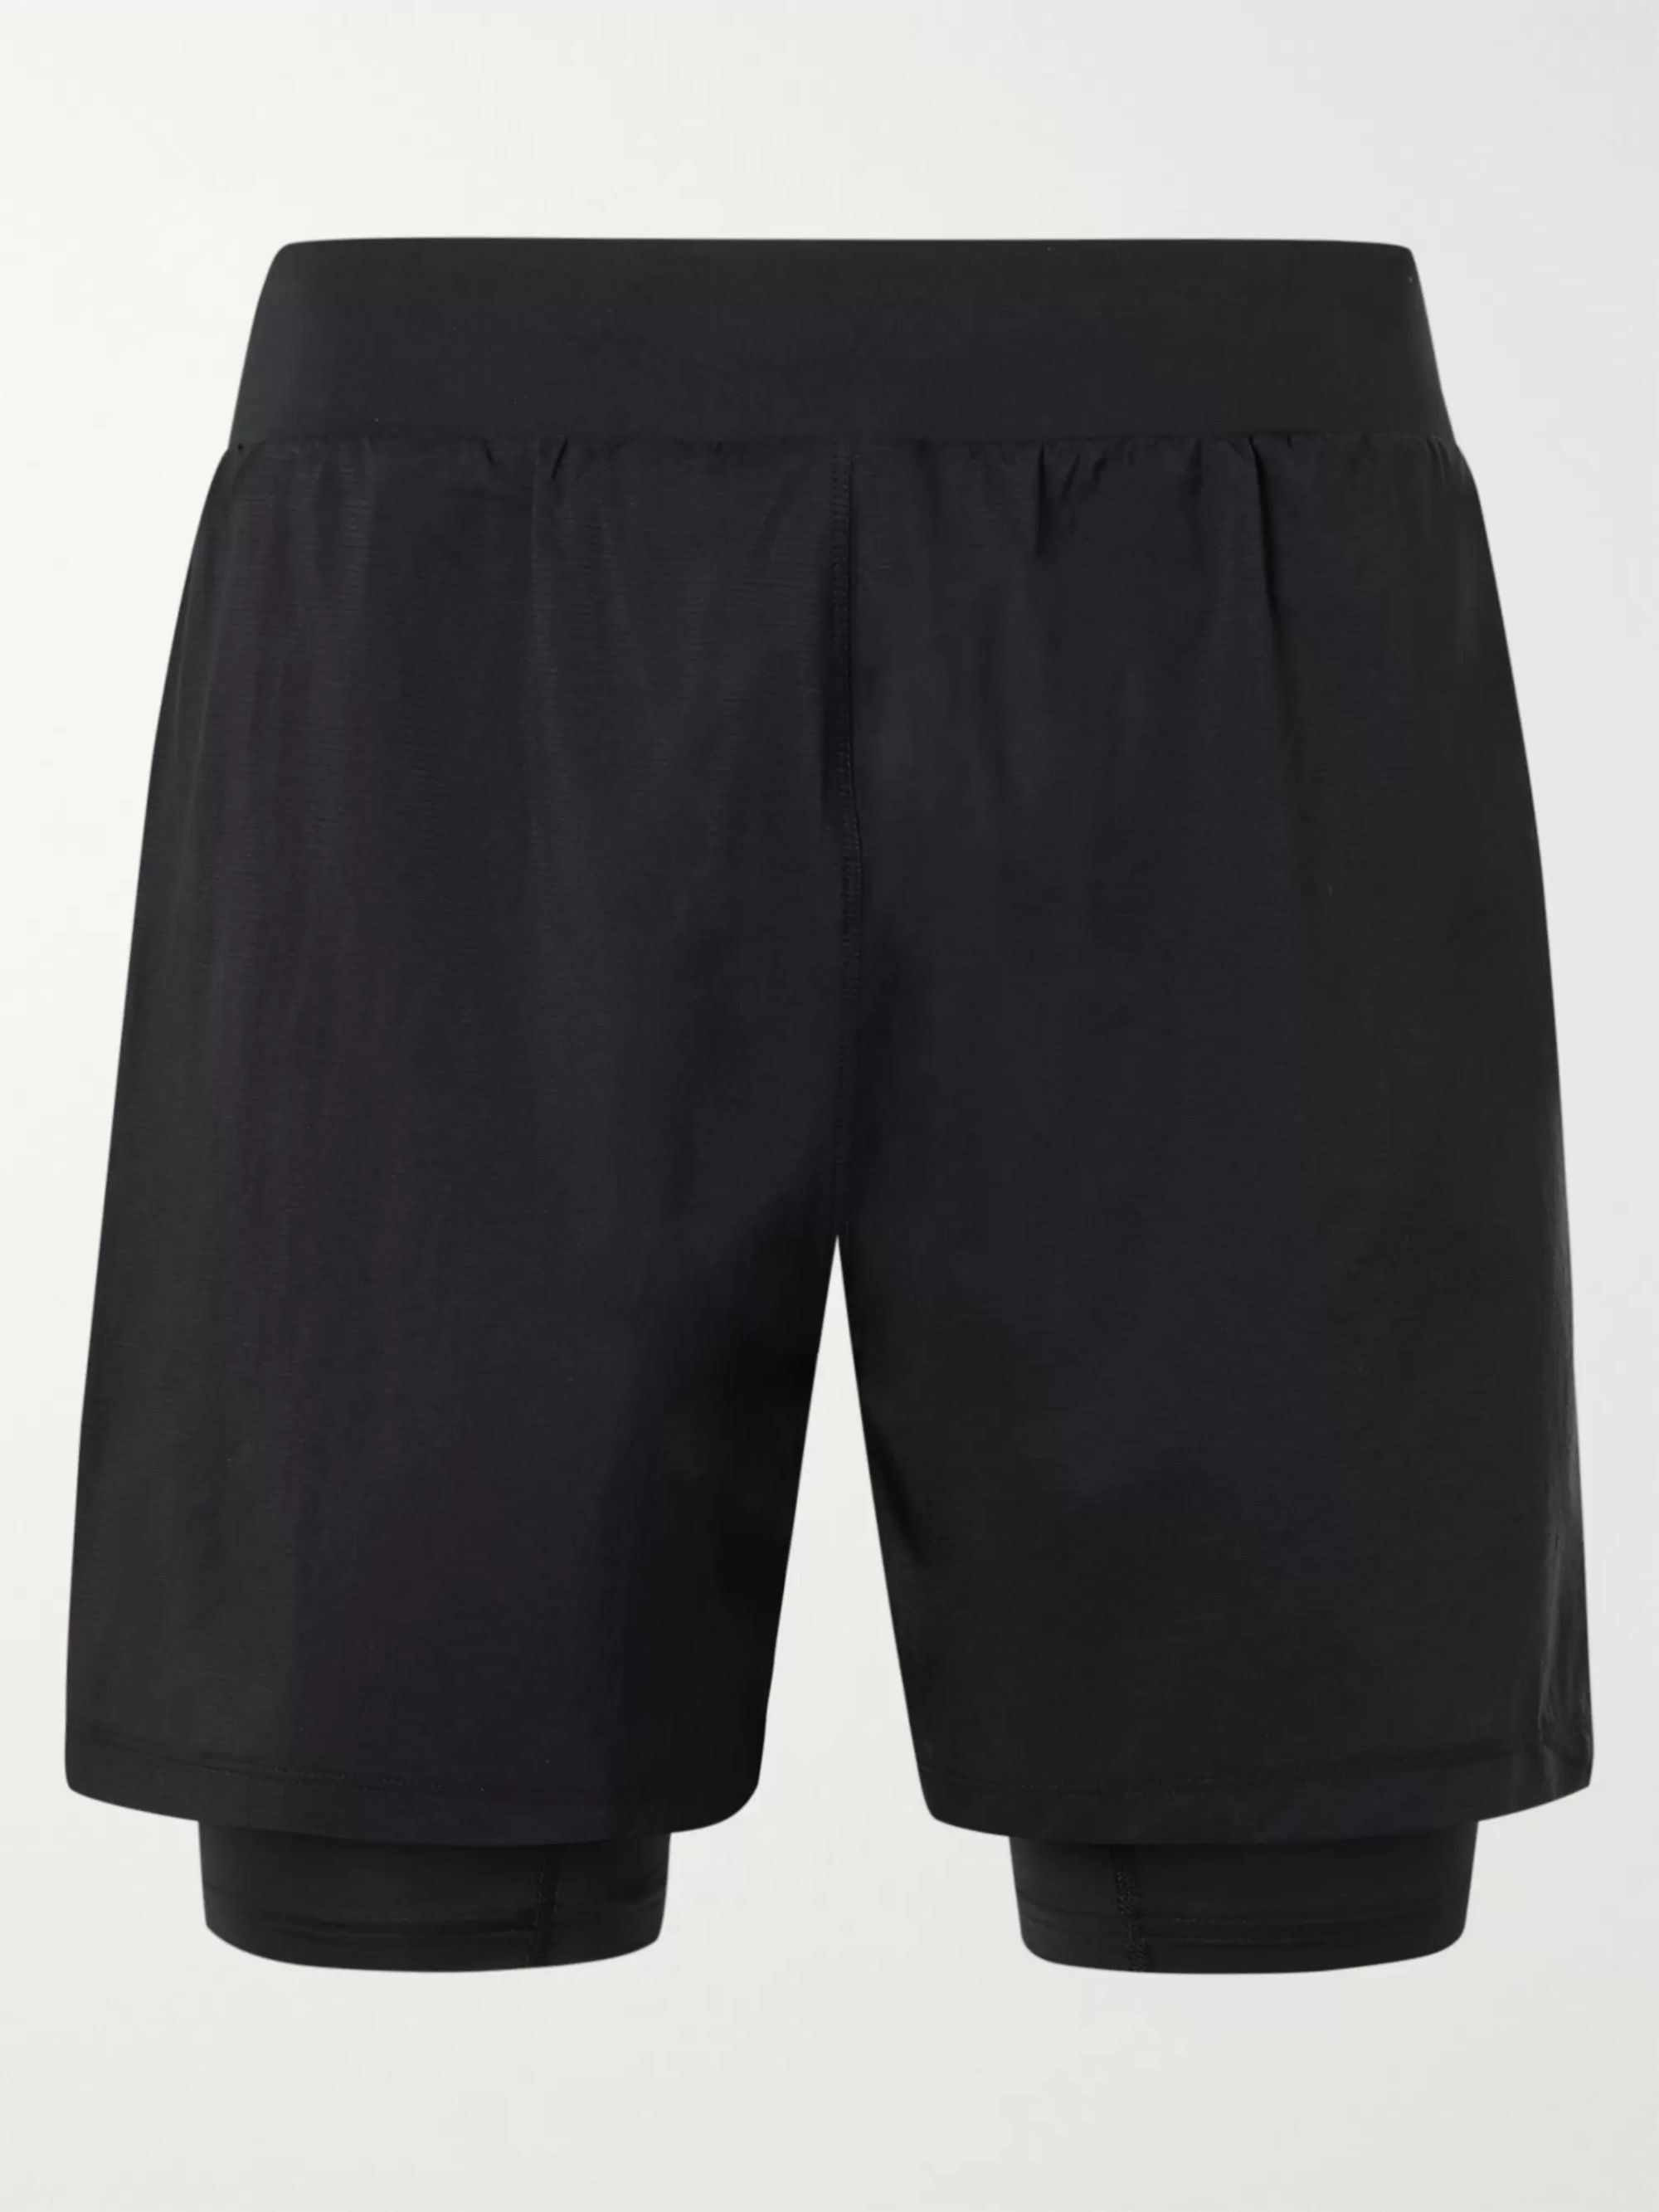 heatgear shorts